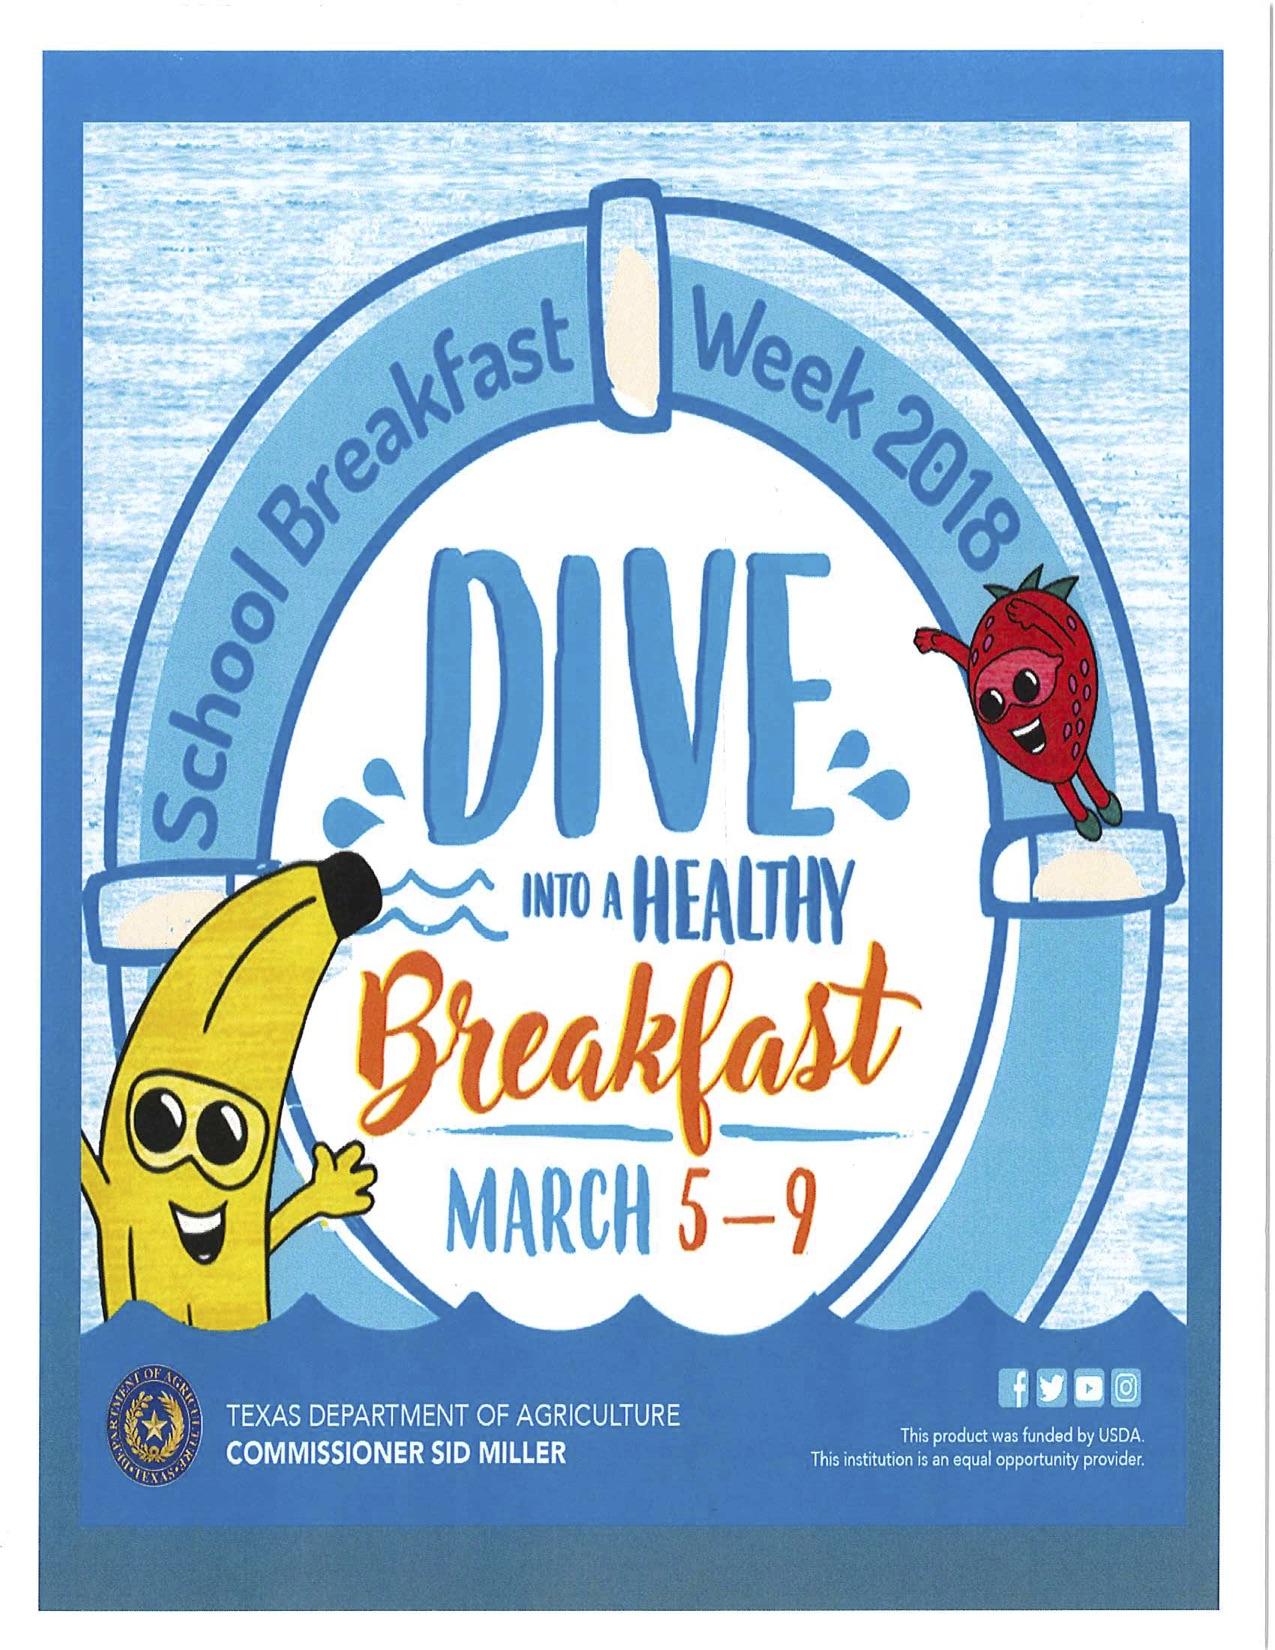 Breakfast Week March 5-9, 2018